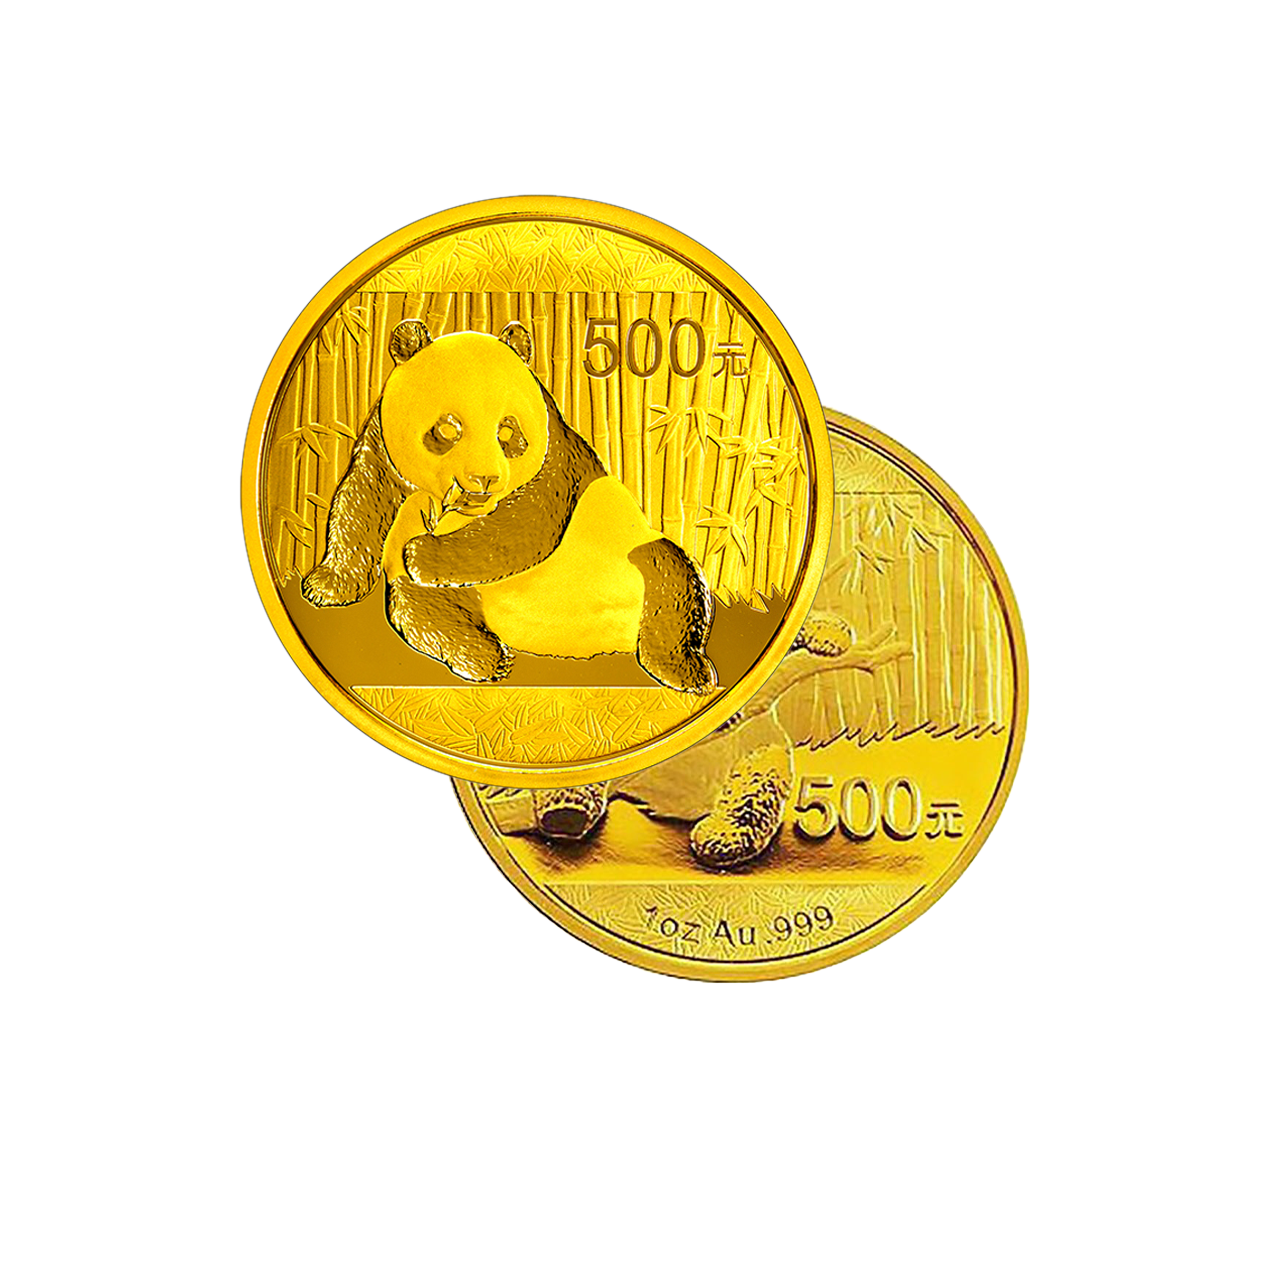 Panda (various Years) - China 1 oz gold coin